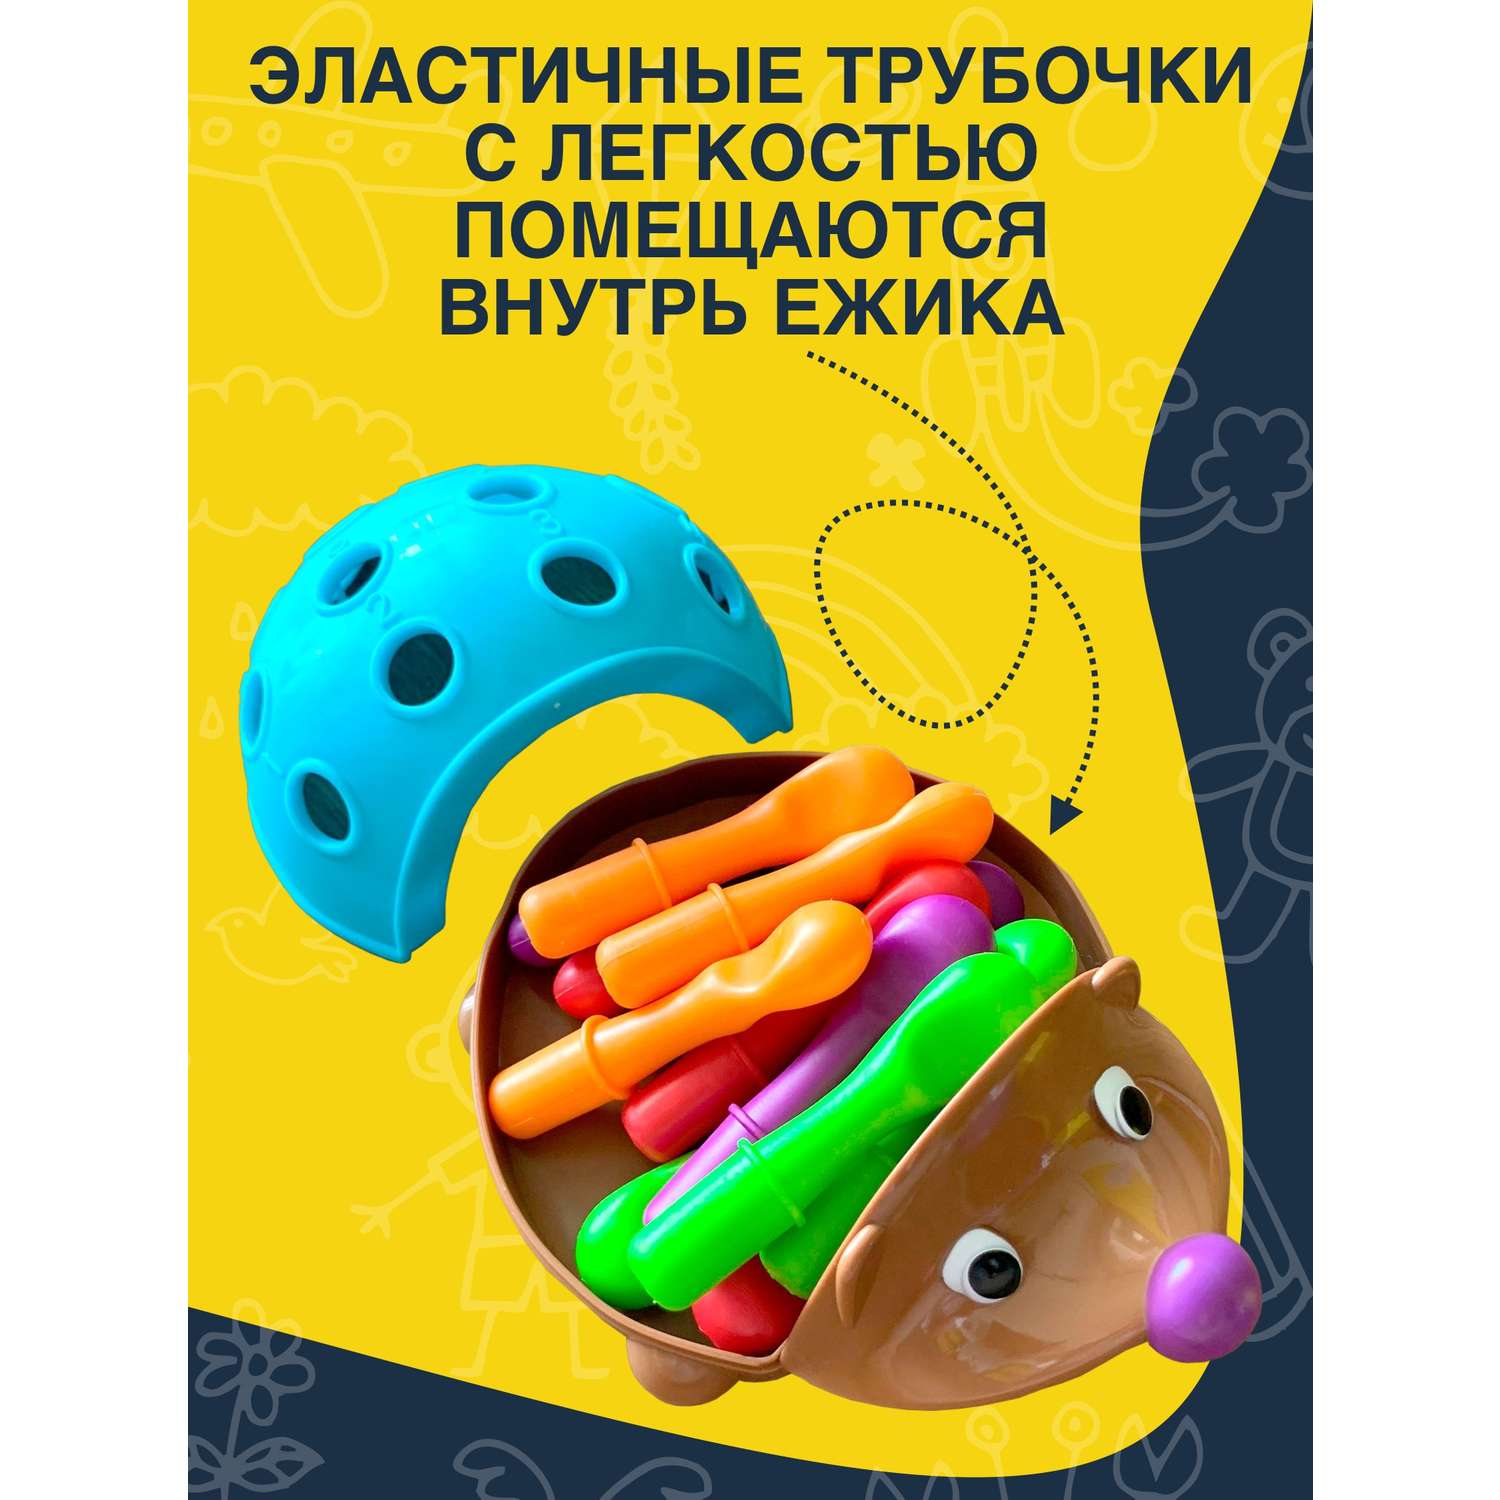 Развивающая игрушка NR-Toys сортер для малышей Ёжик Спайк - фото 4